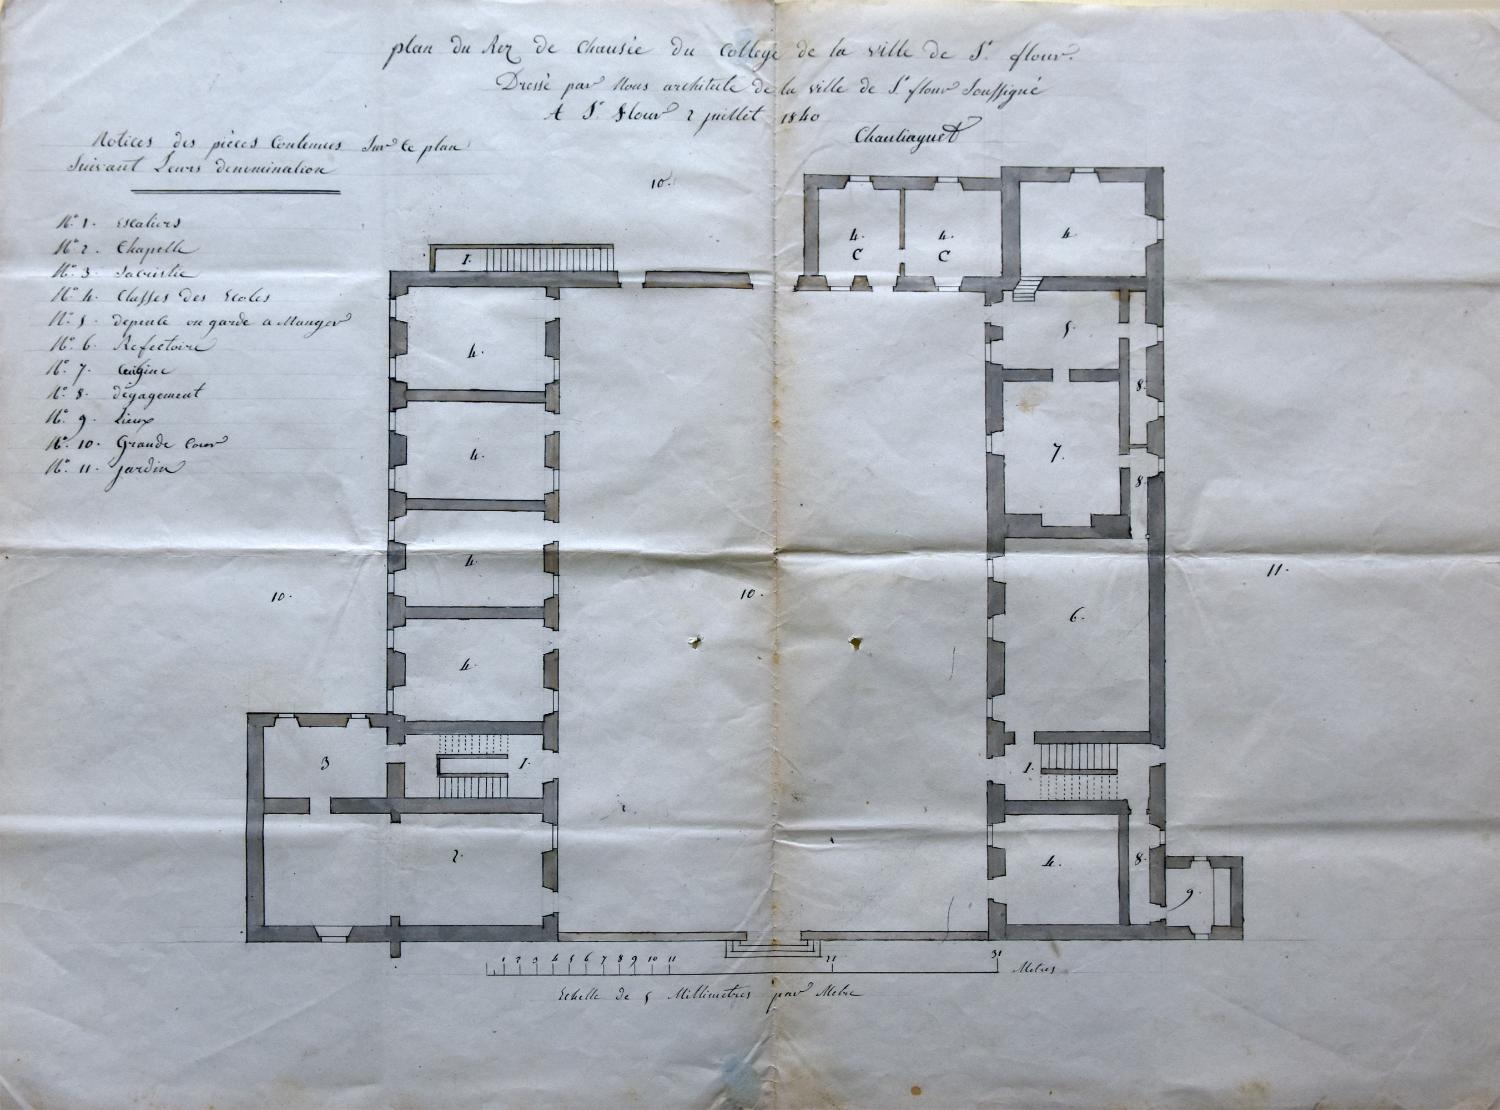 Plan du rez-de-chaussée du collège en 1840 par P. Chauliaguet (AC Saint-Flour, 4 M 6/1)